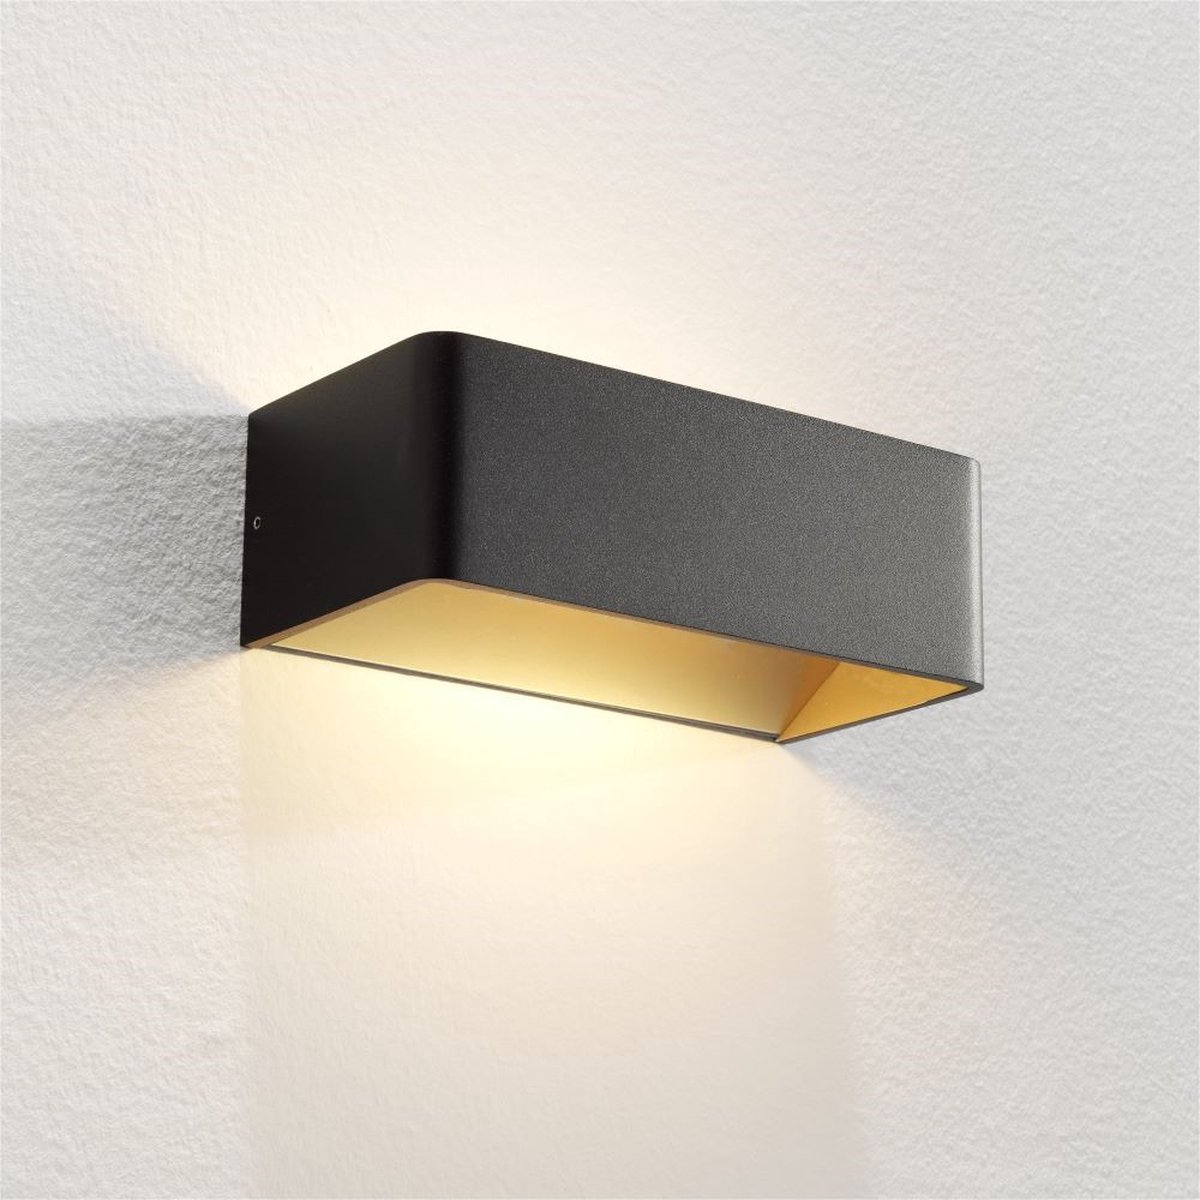 Wandlamp Mainz Zwart/Mat Goud - LED 2x3W 2700K 2x270lm - IP20 - Dimbaar > wandlamp binnen zwart goud | wandlamp zwart goud | muurlamp zwart goud | led lamp zwart goud | sfeer lamp zwart goud | design lamp zwart goud